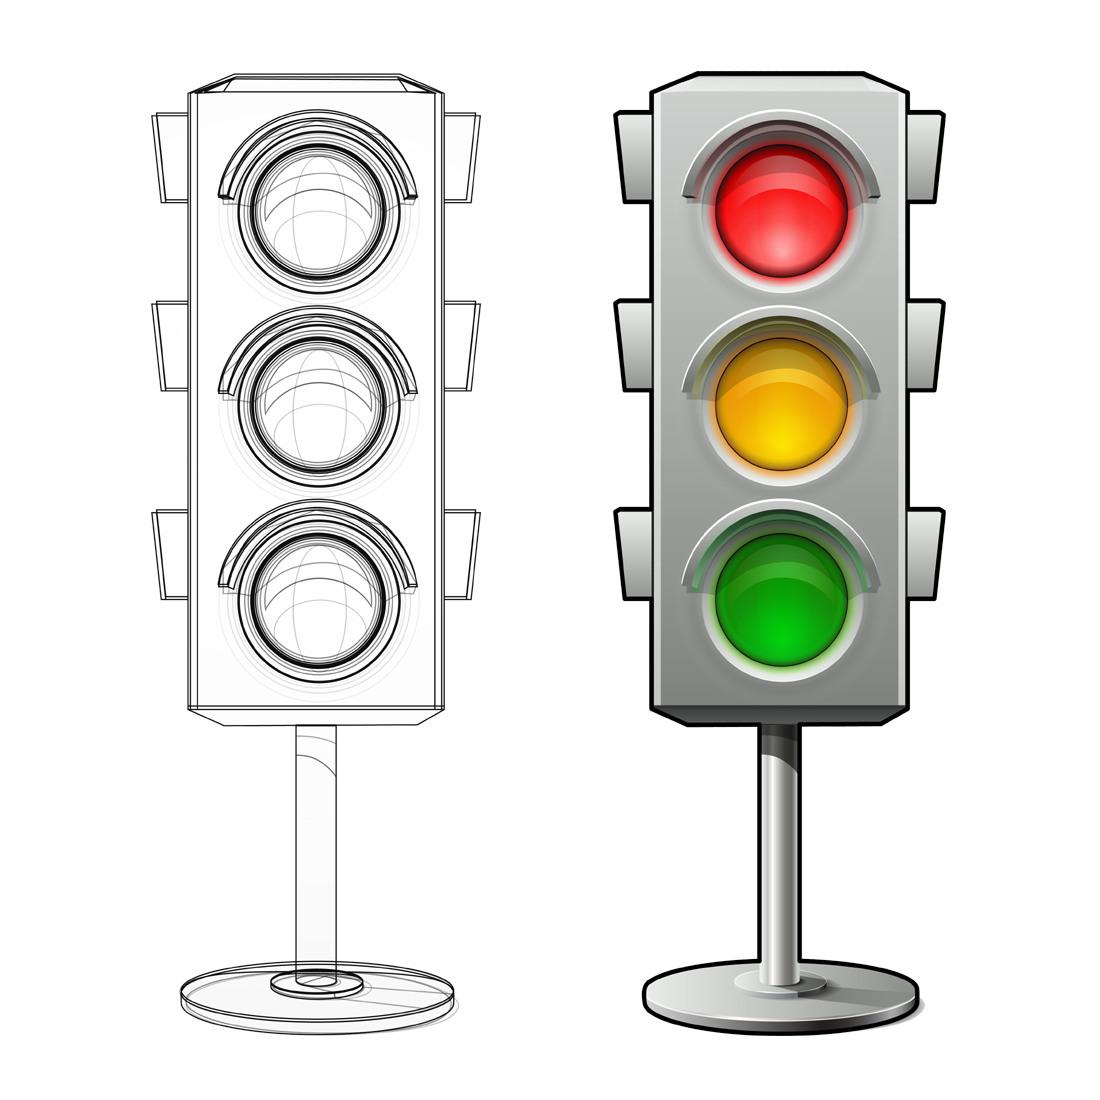 traffic light engineering